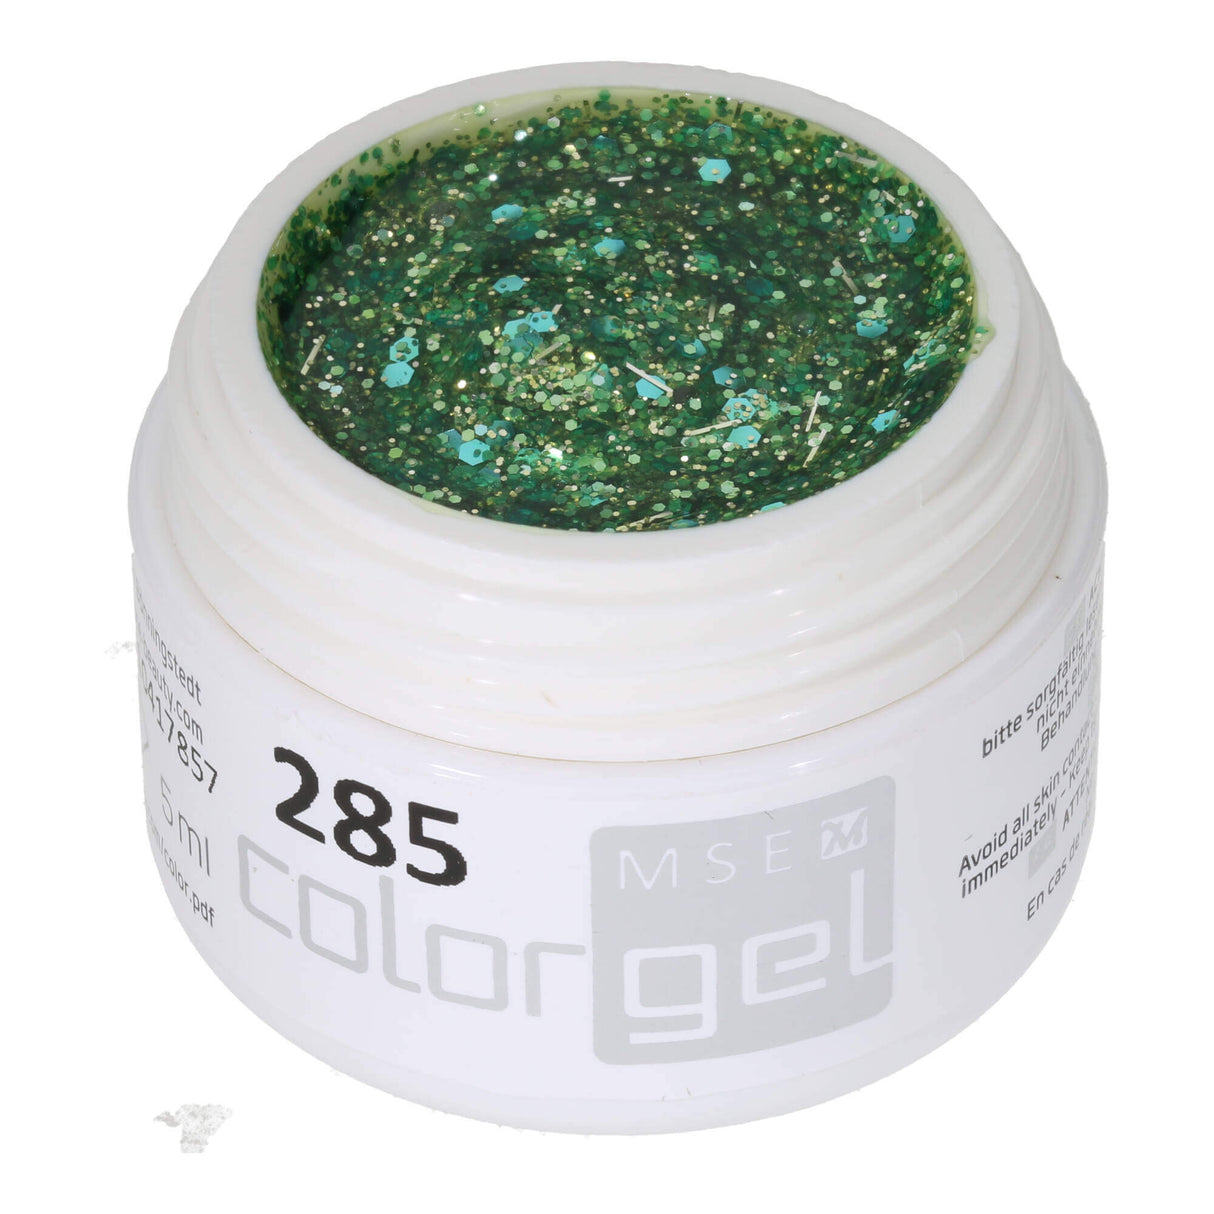 # 285 Premium-GLITTER Color Gel 5ml Gel lấp lánh màu xanh bạc hà pha trộn với ánh kim tuyến màu ngọc lam và ánh bạc